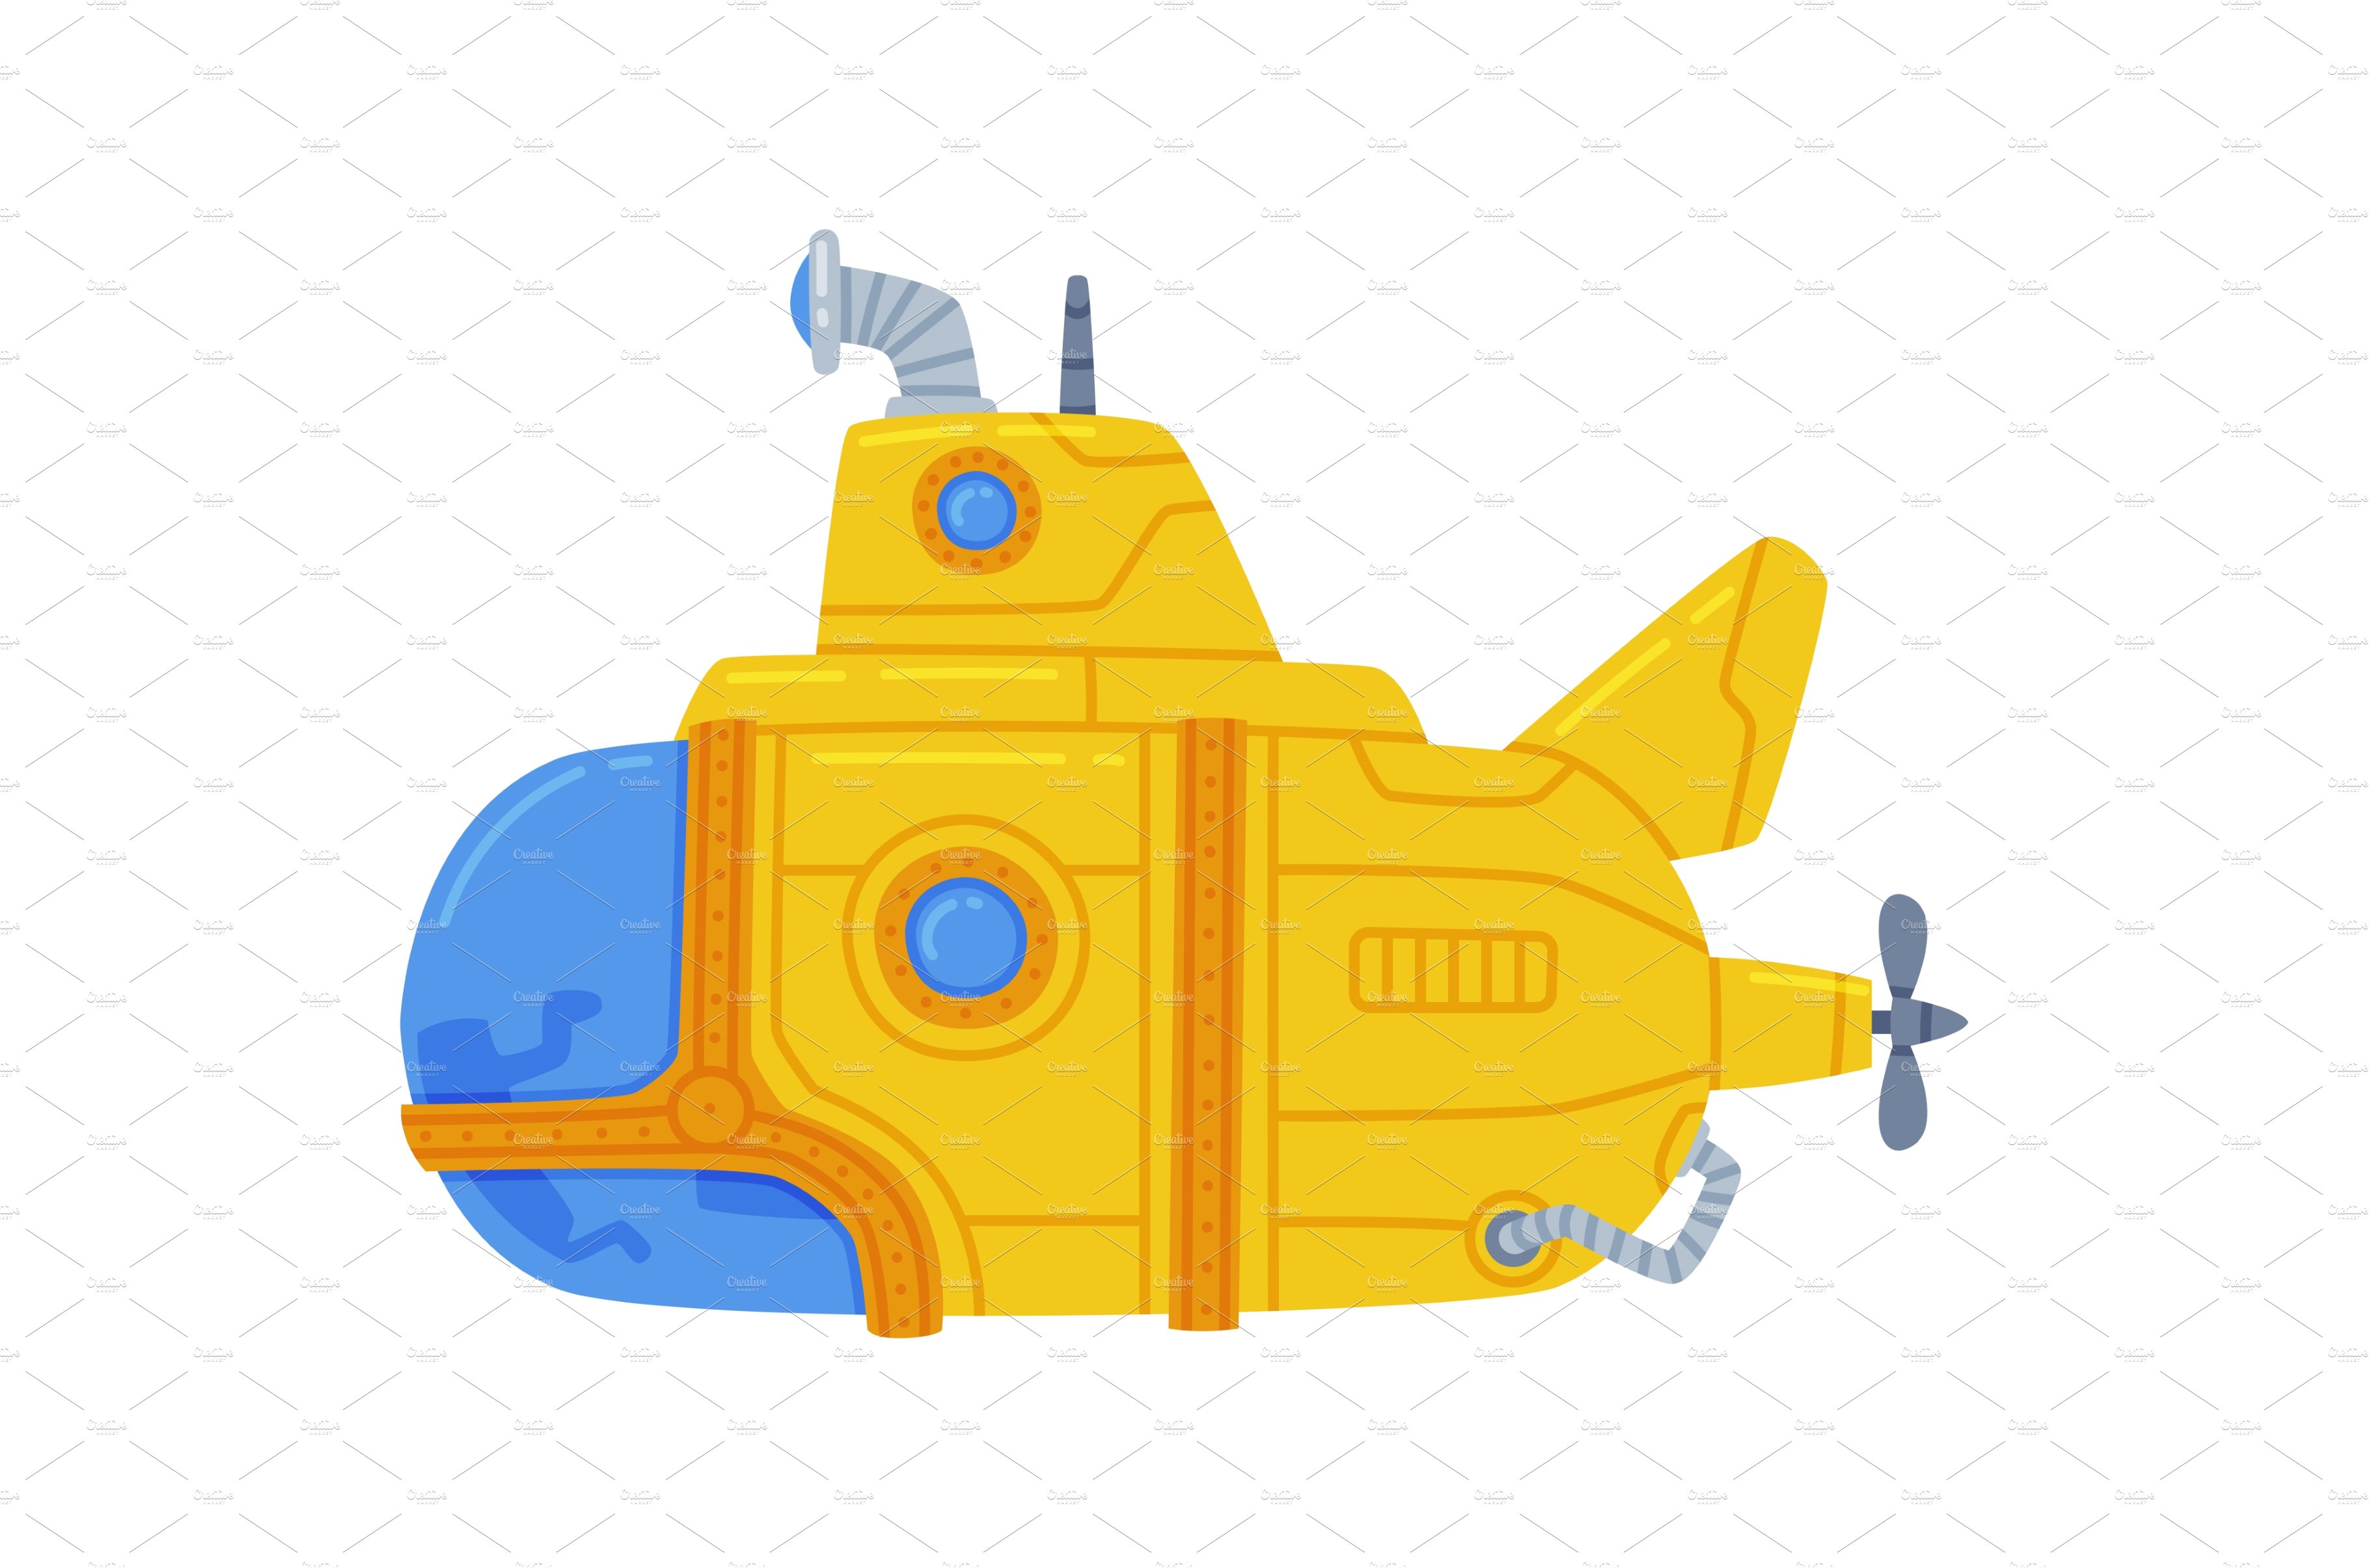 Yellow Submarine Watercraft cover image.